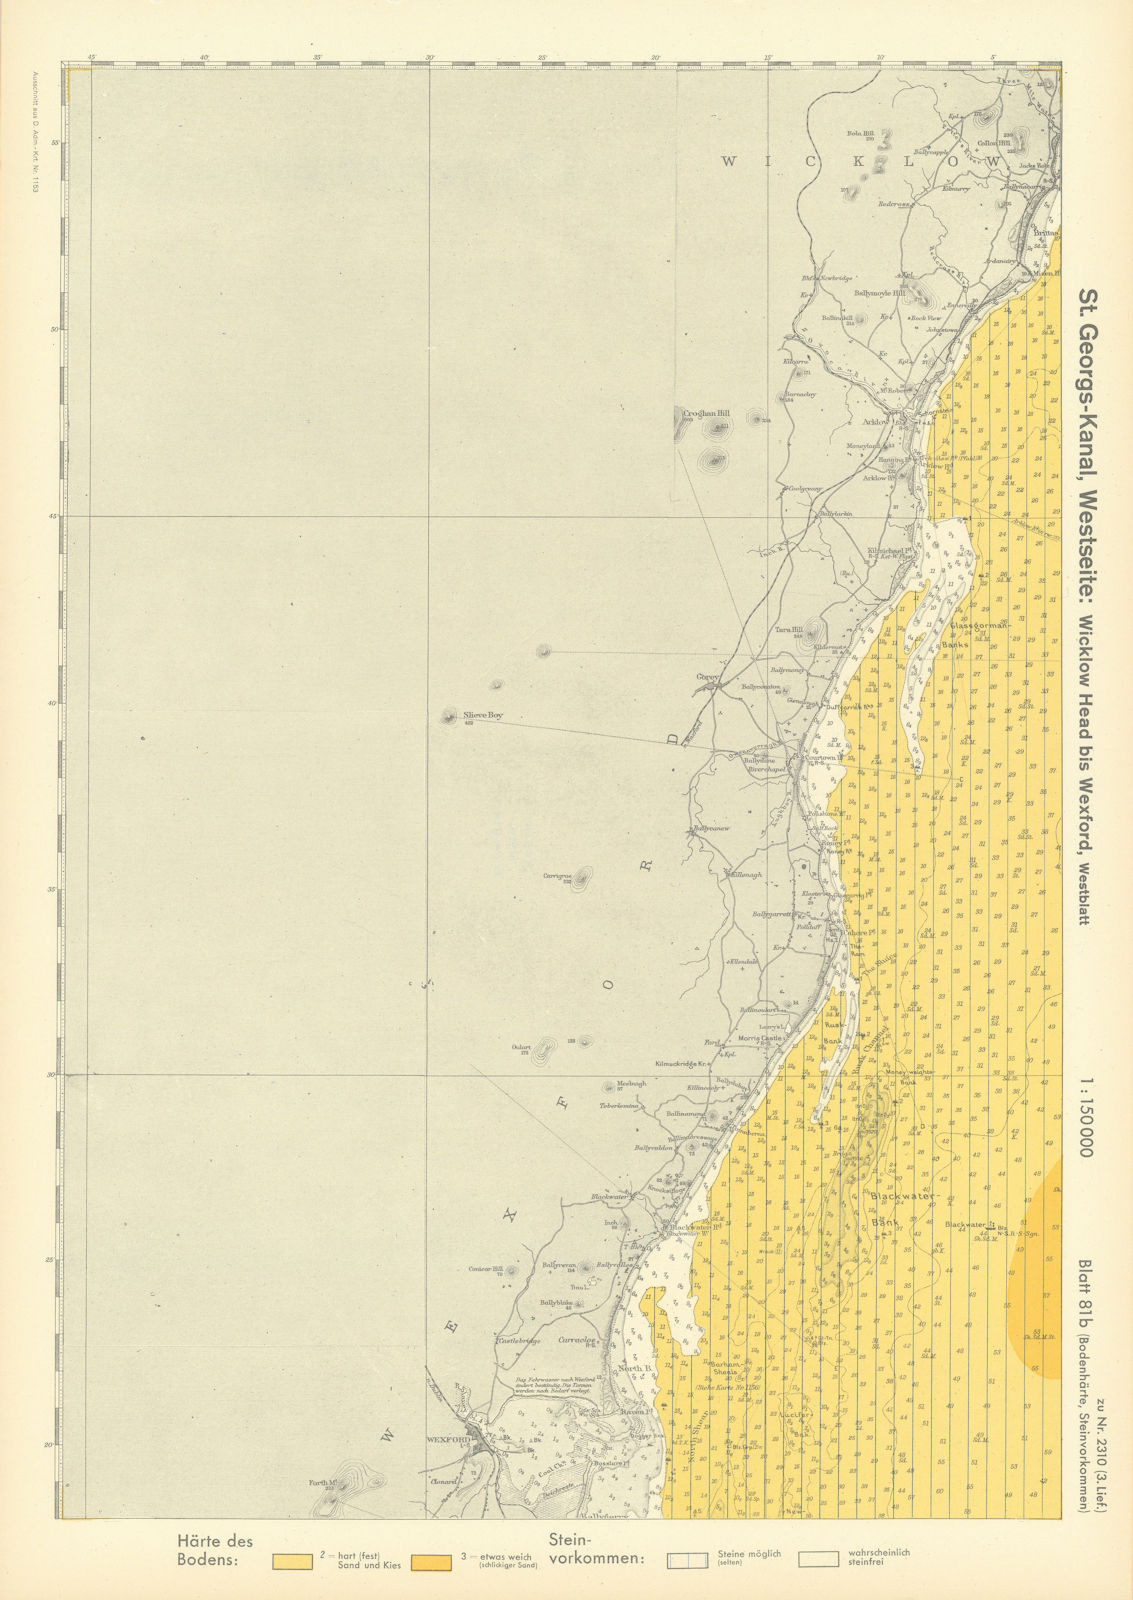 81b. Ireland coast. County Wicklow & Wexford. KRIEGSMARINE Nazi map 1940